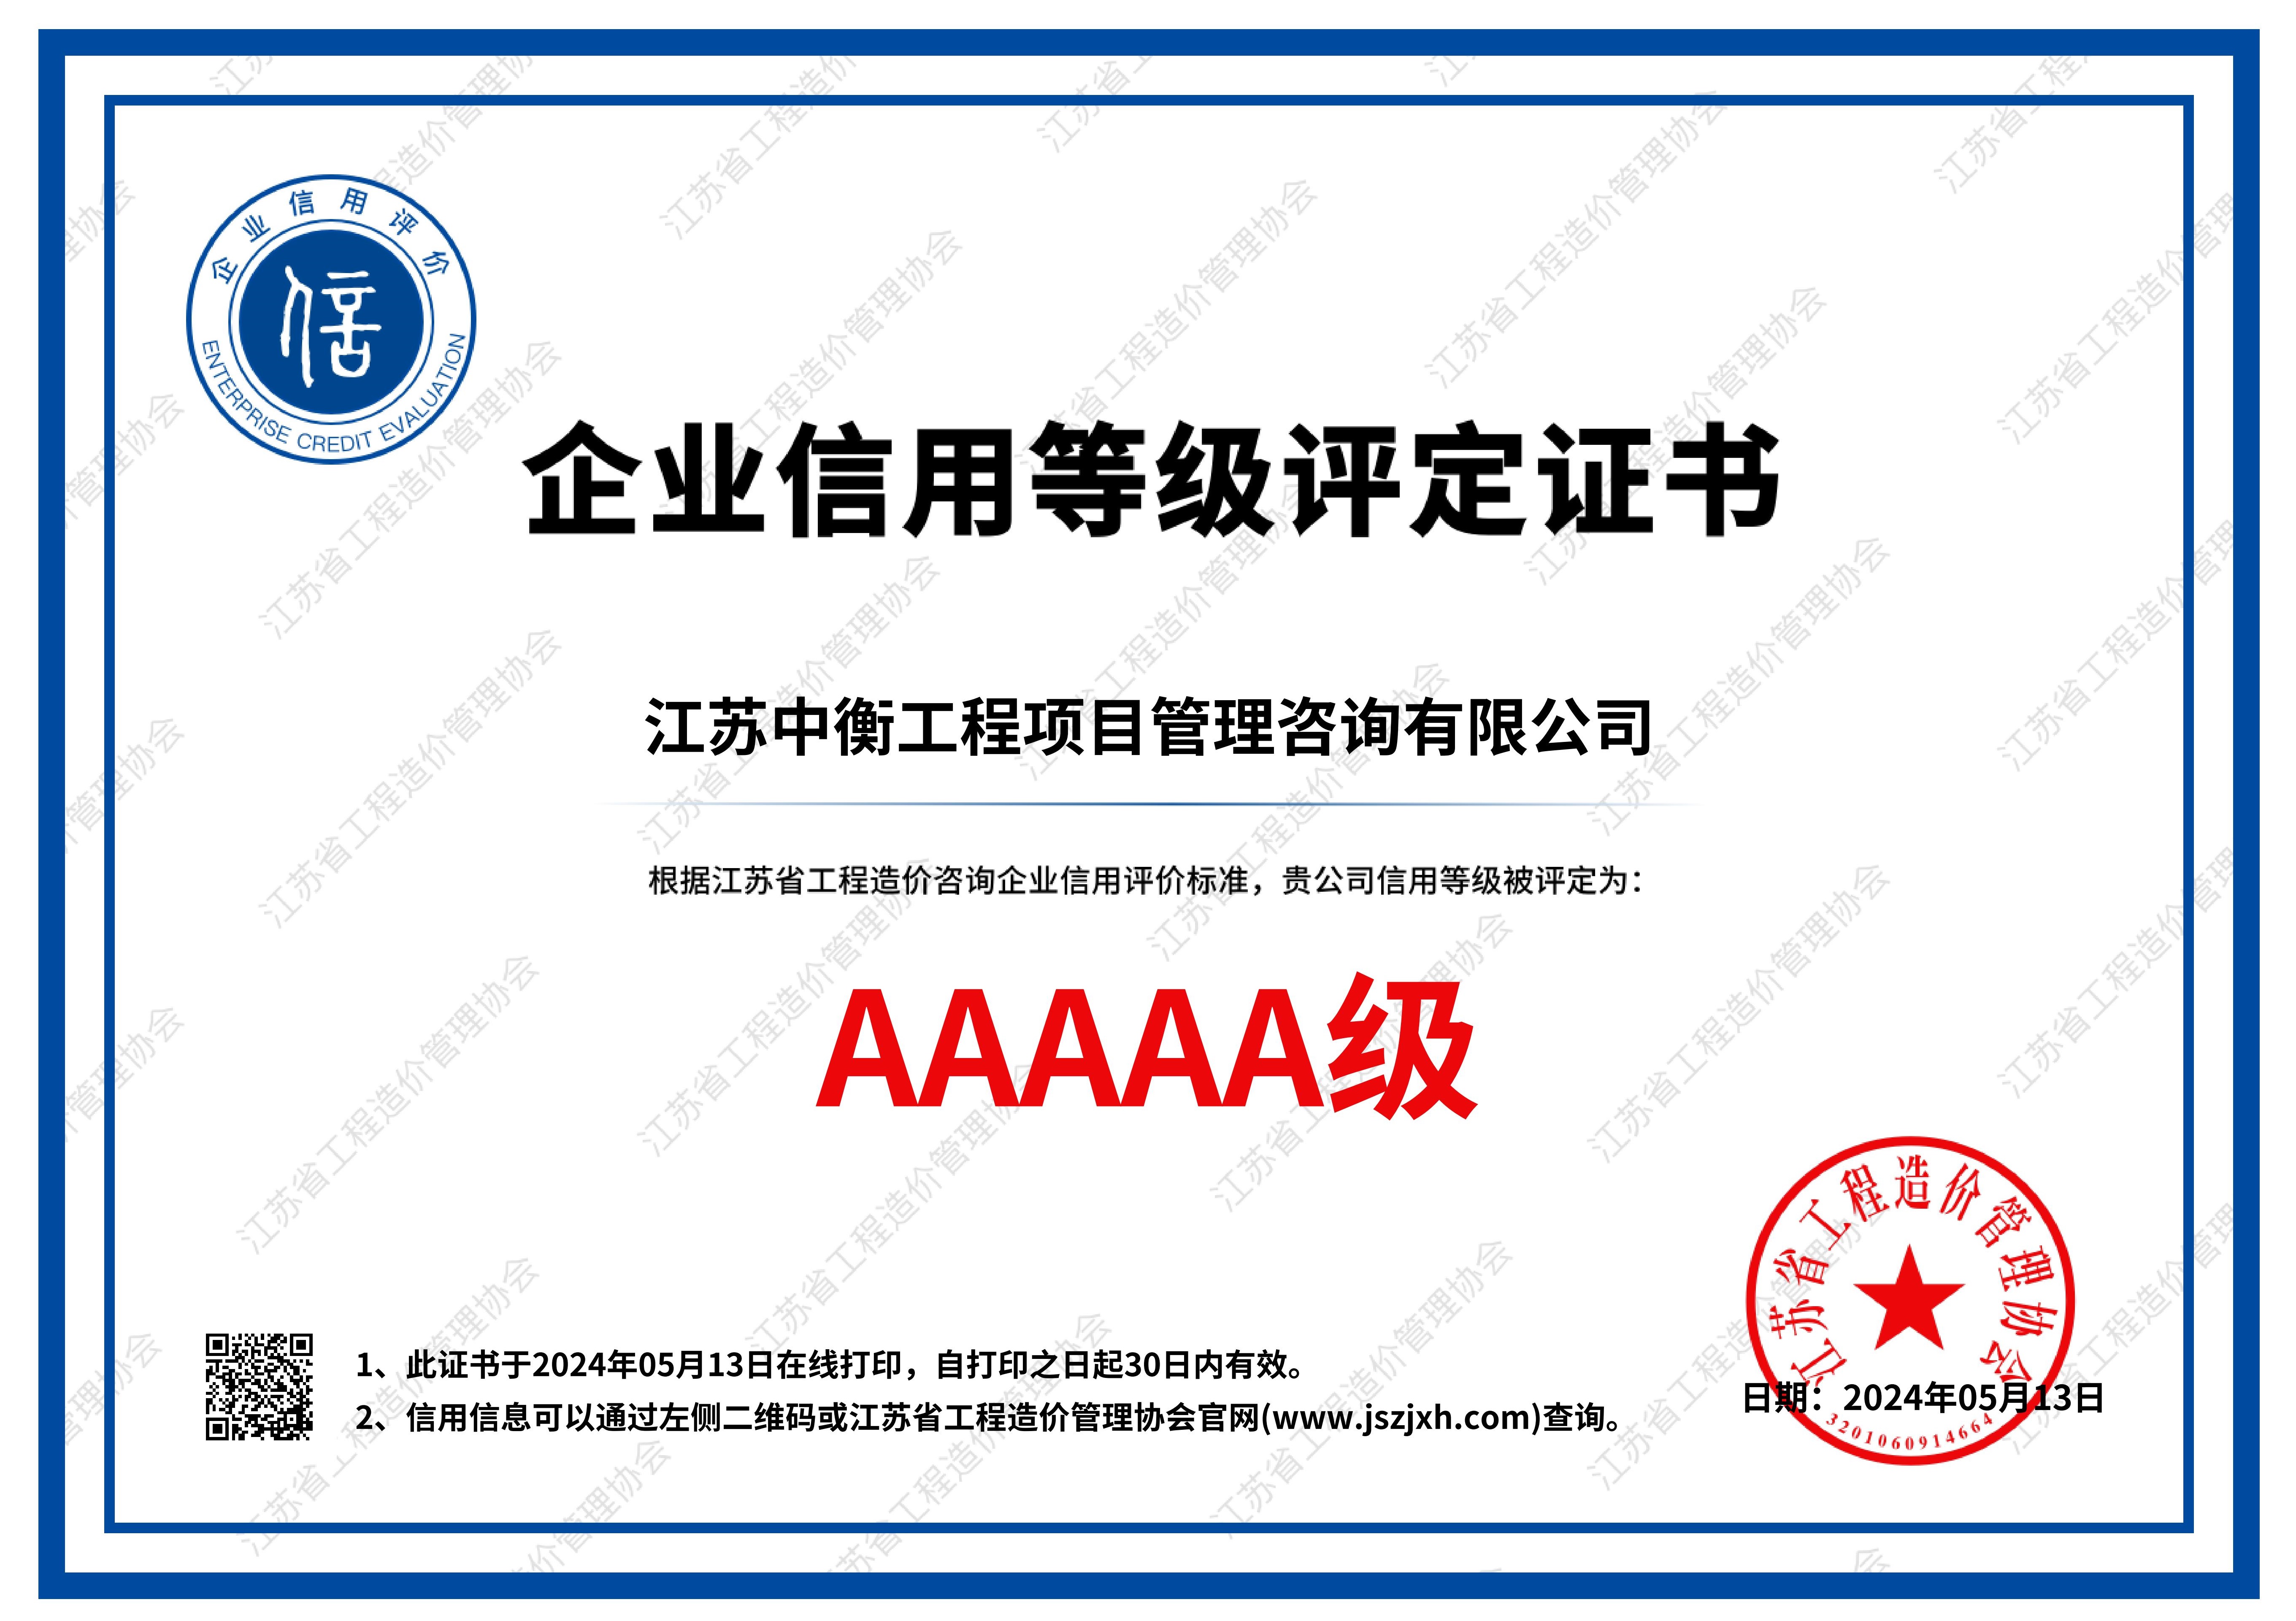 江苏省工程造价管理协会AAAAA级